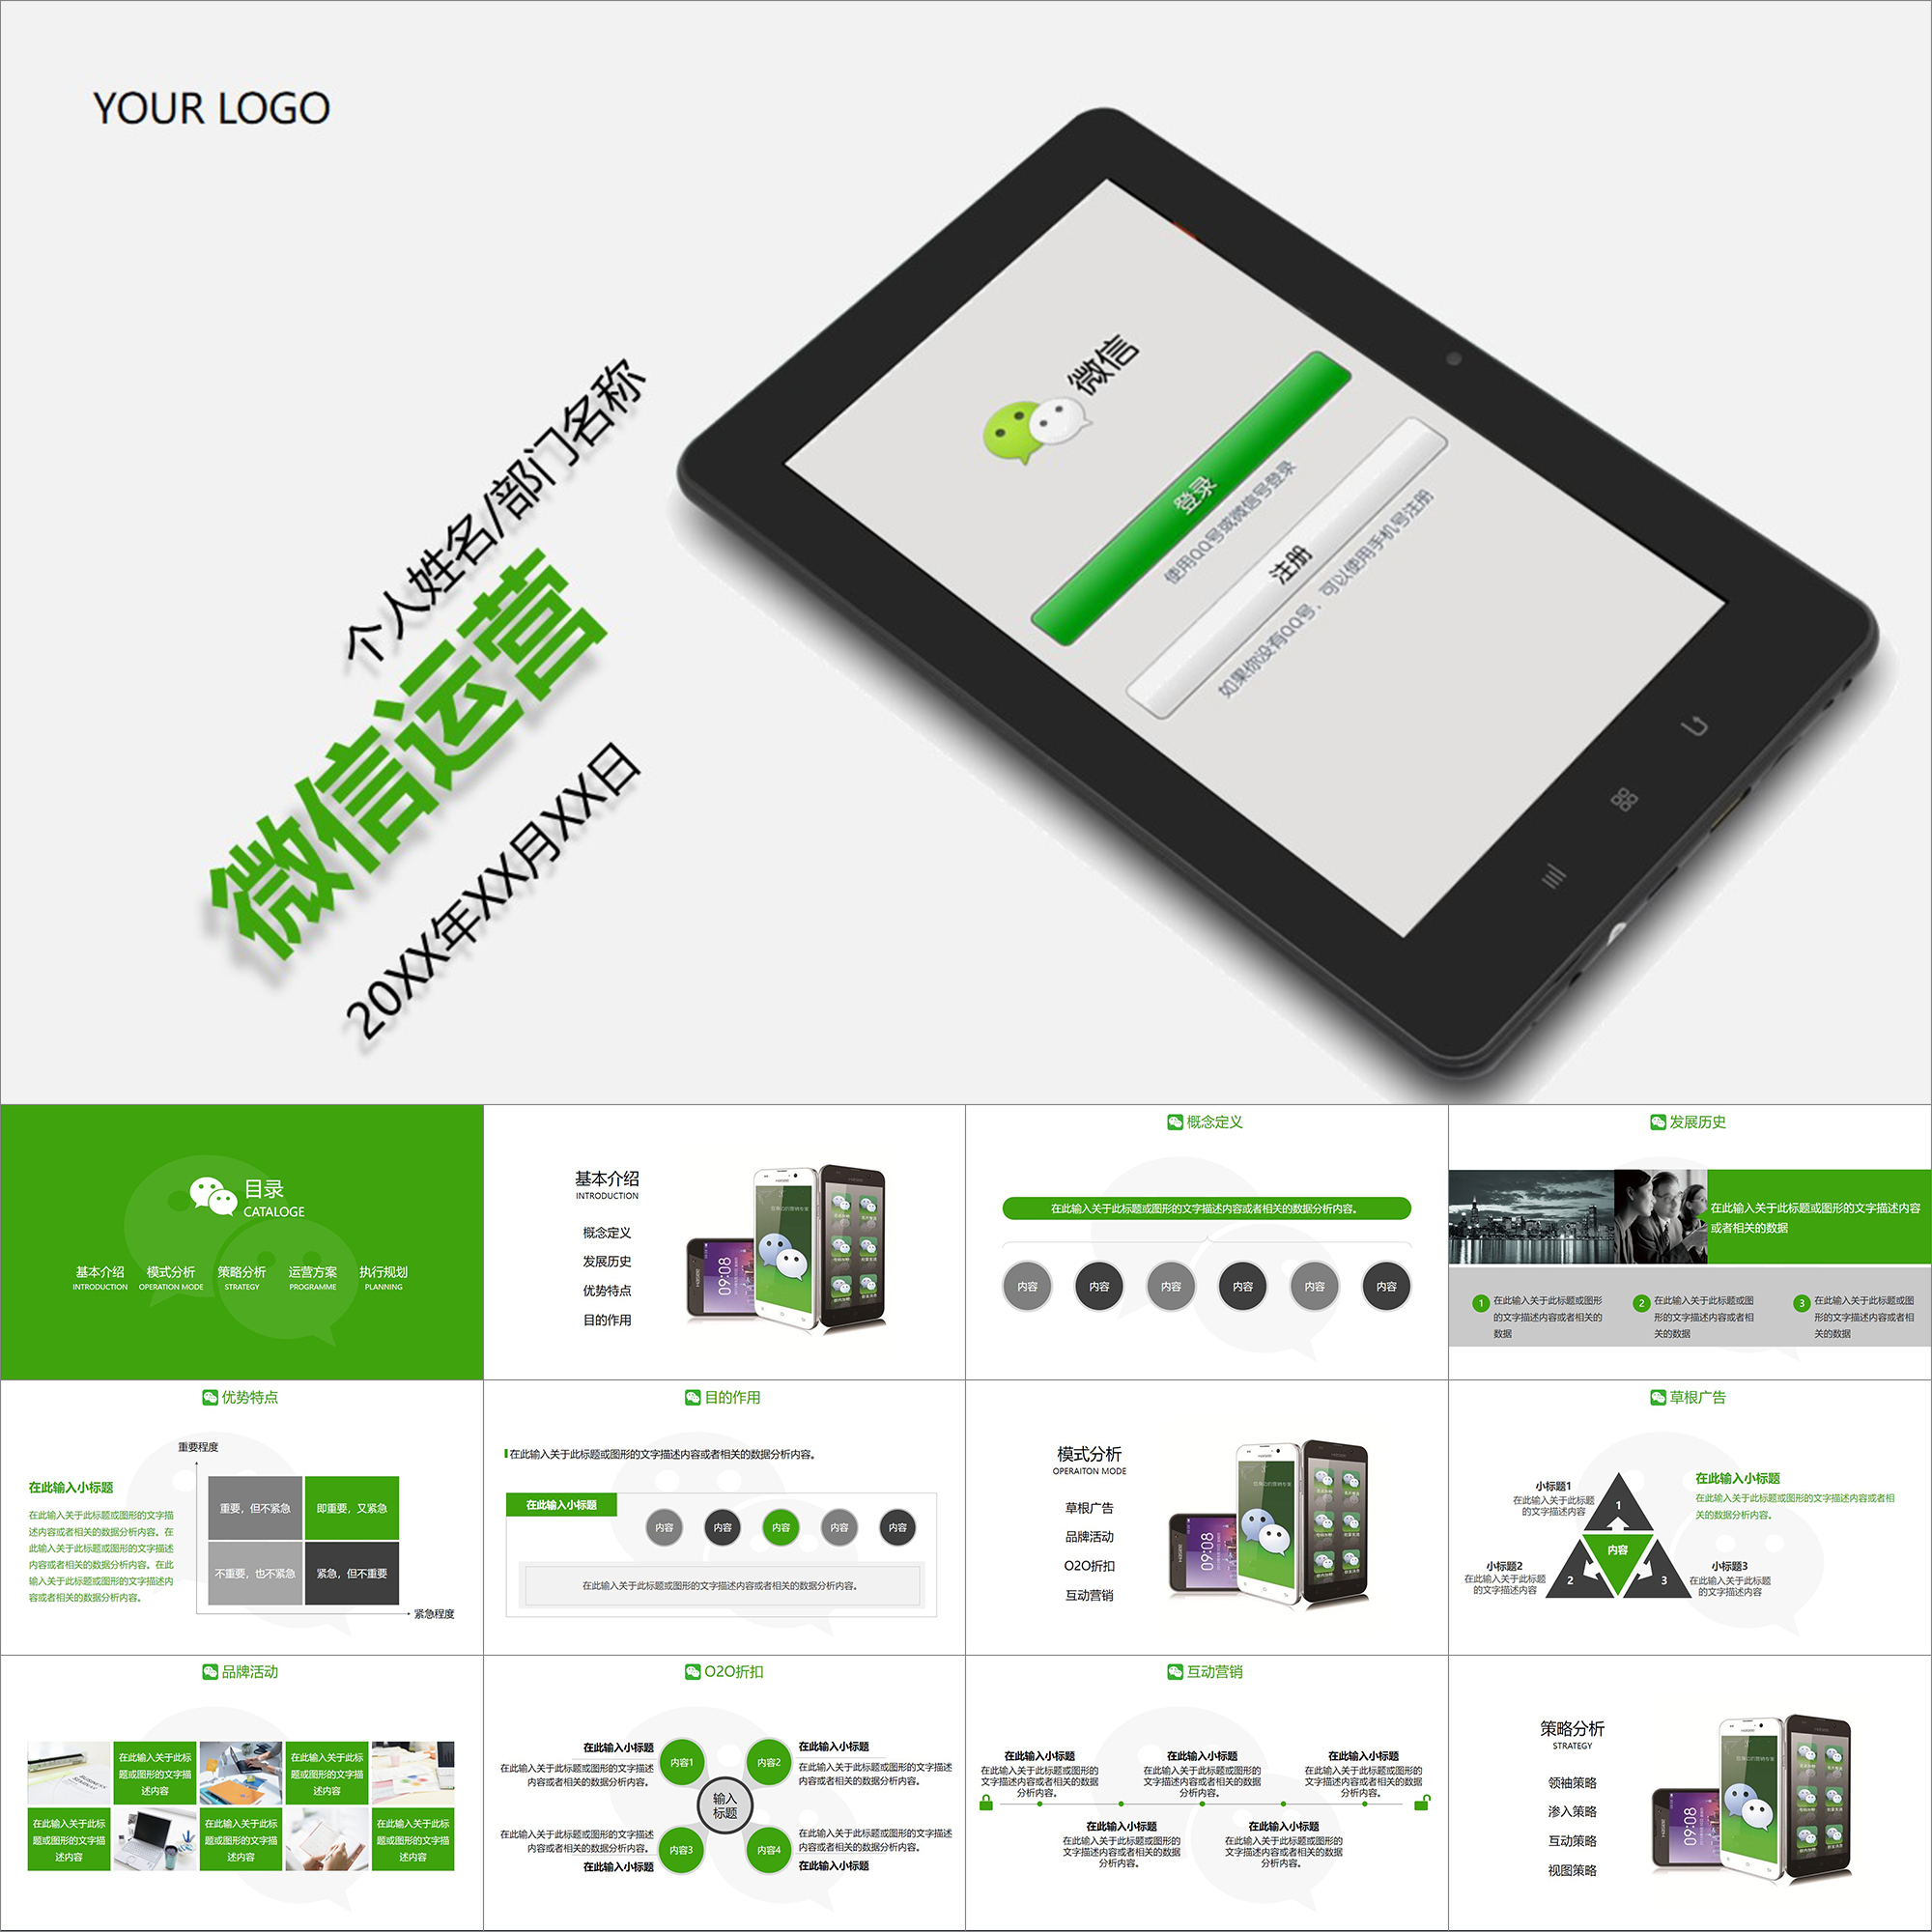 【动态PPT】创意绿色微信公众号朋友圈运营管理营销策划PPT模板